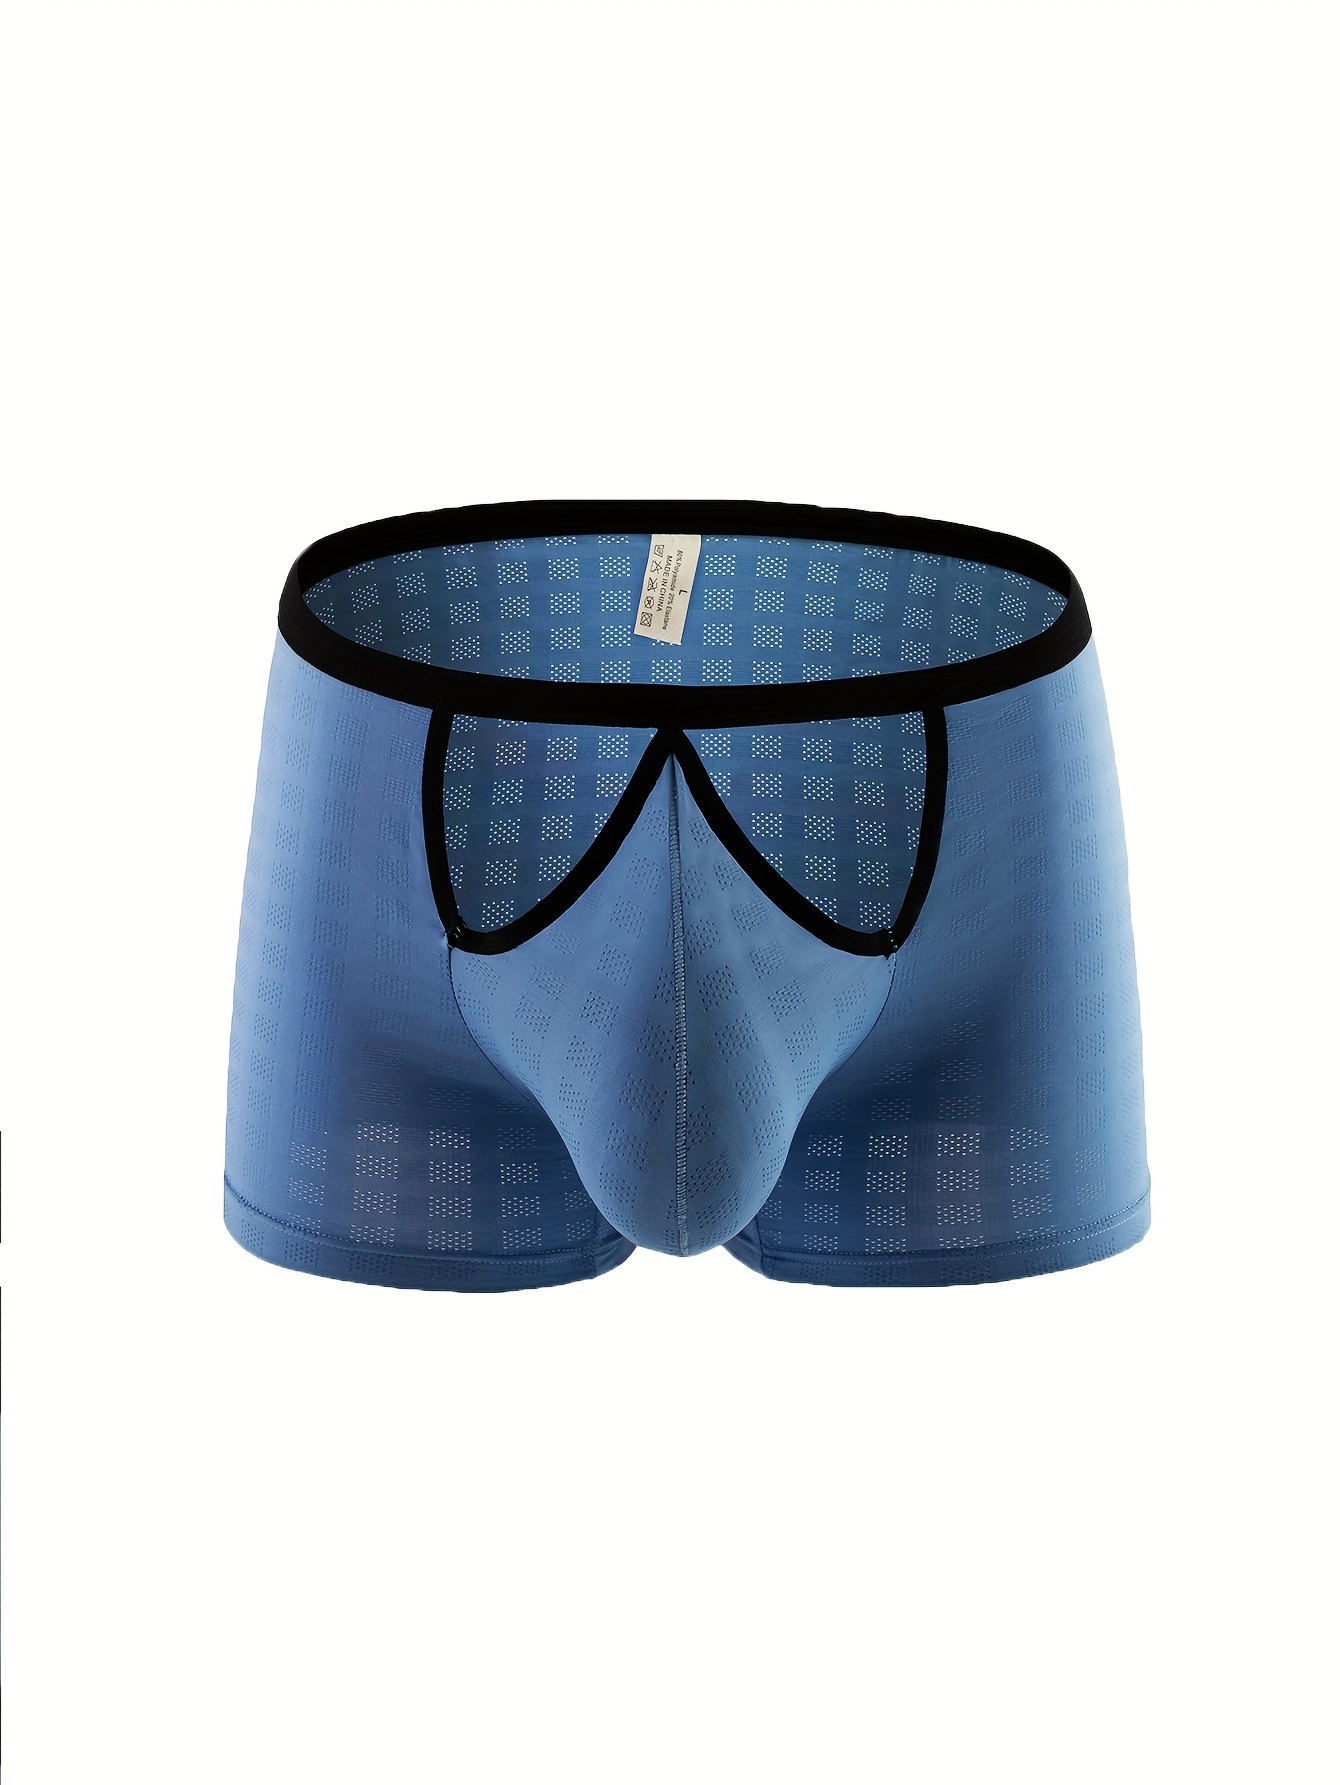 Sexy Underwear Men Boxer Shorts Bulge Underpants